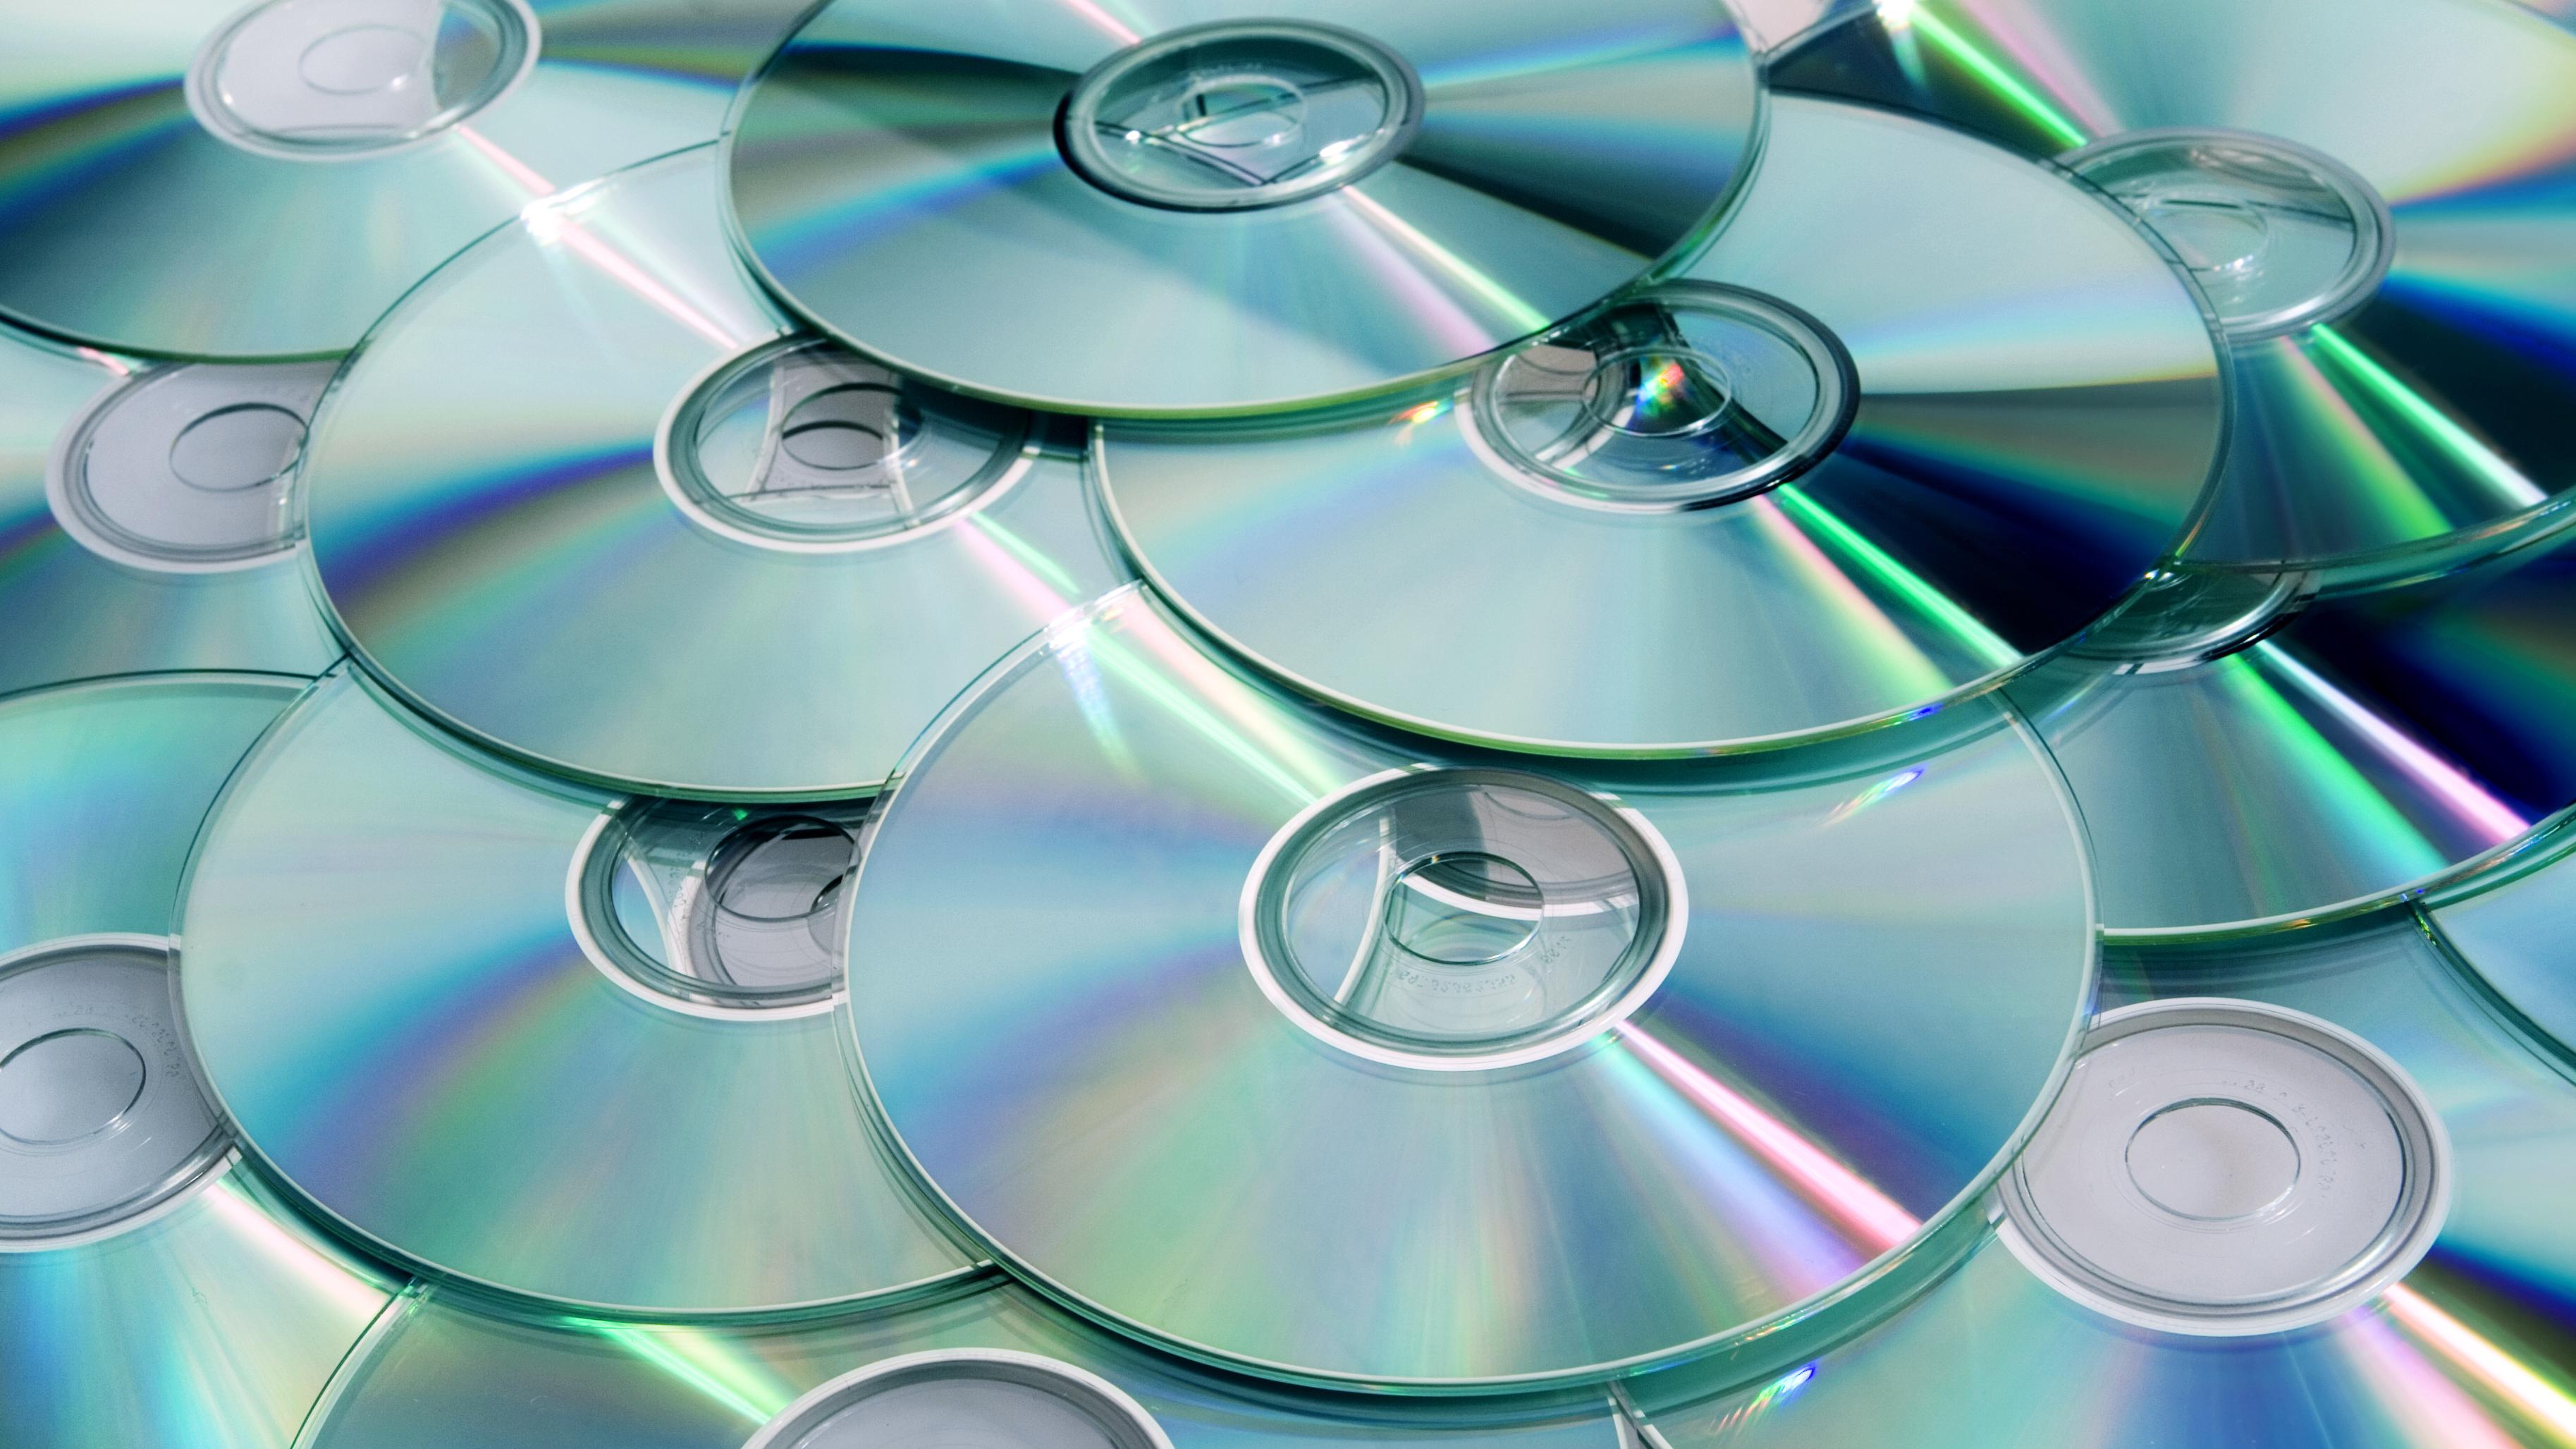 Skal lage ny disk med ekstra høy kapasitet